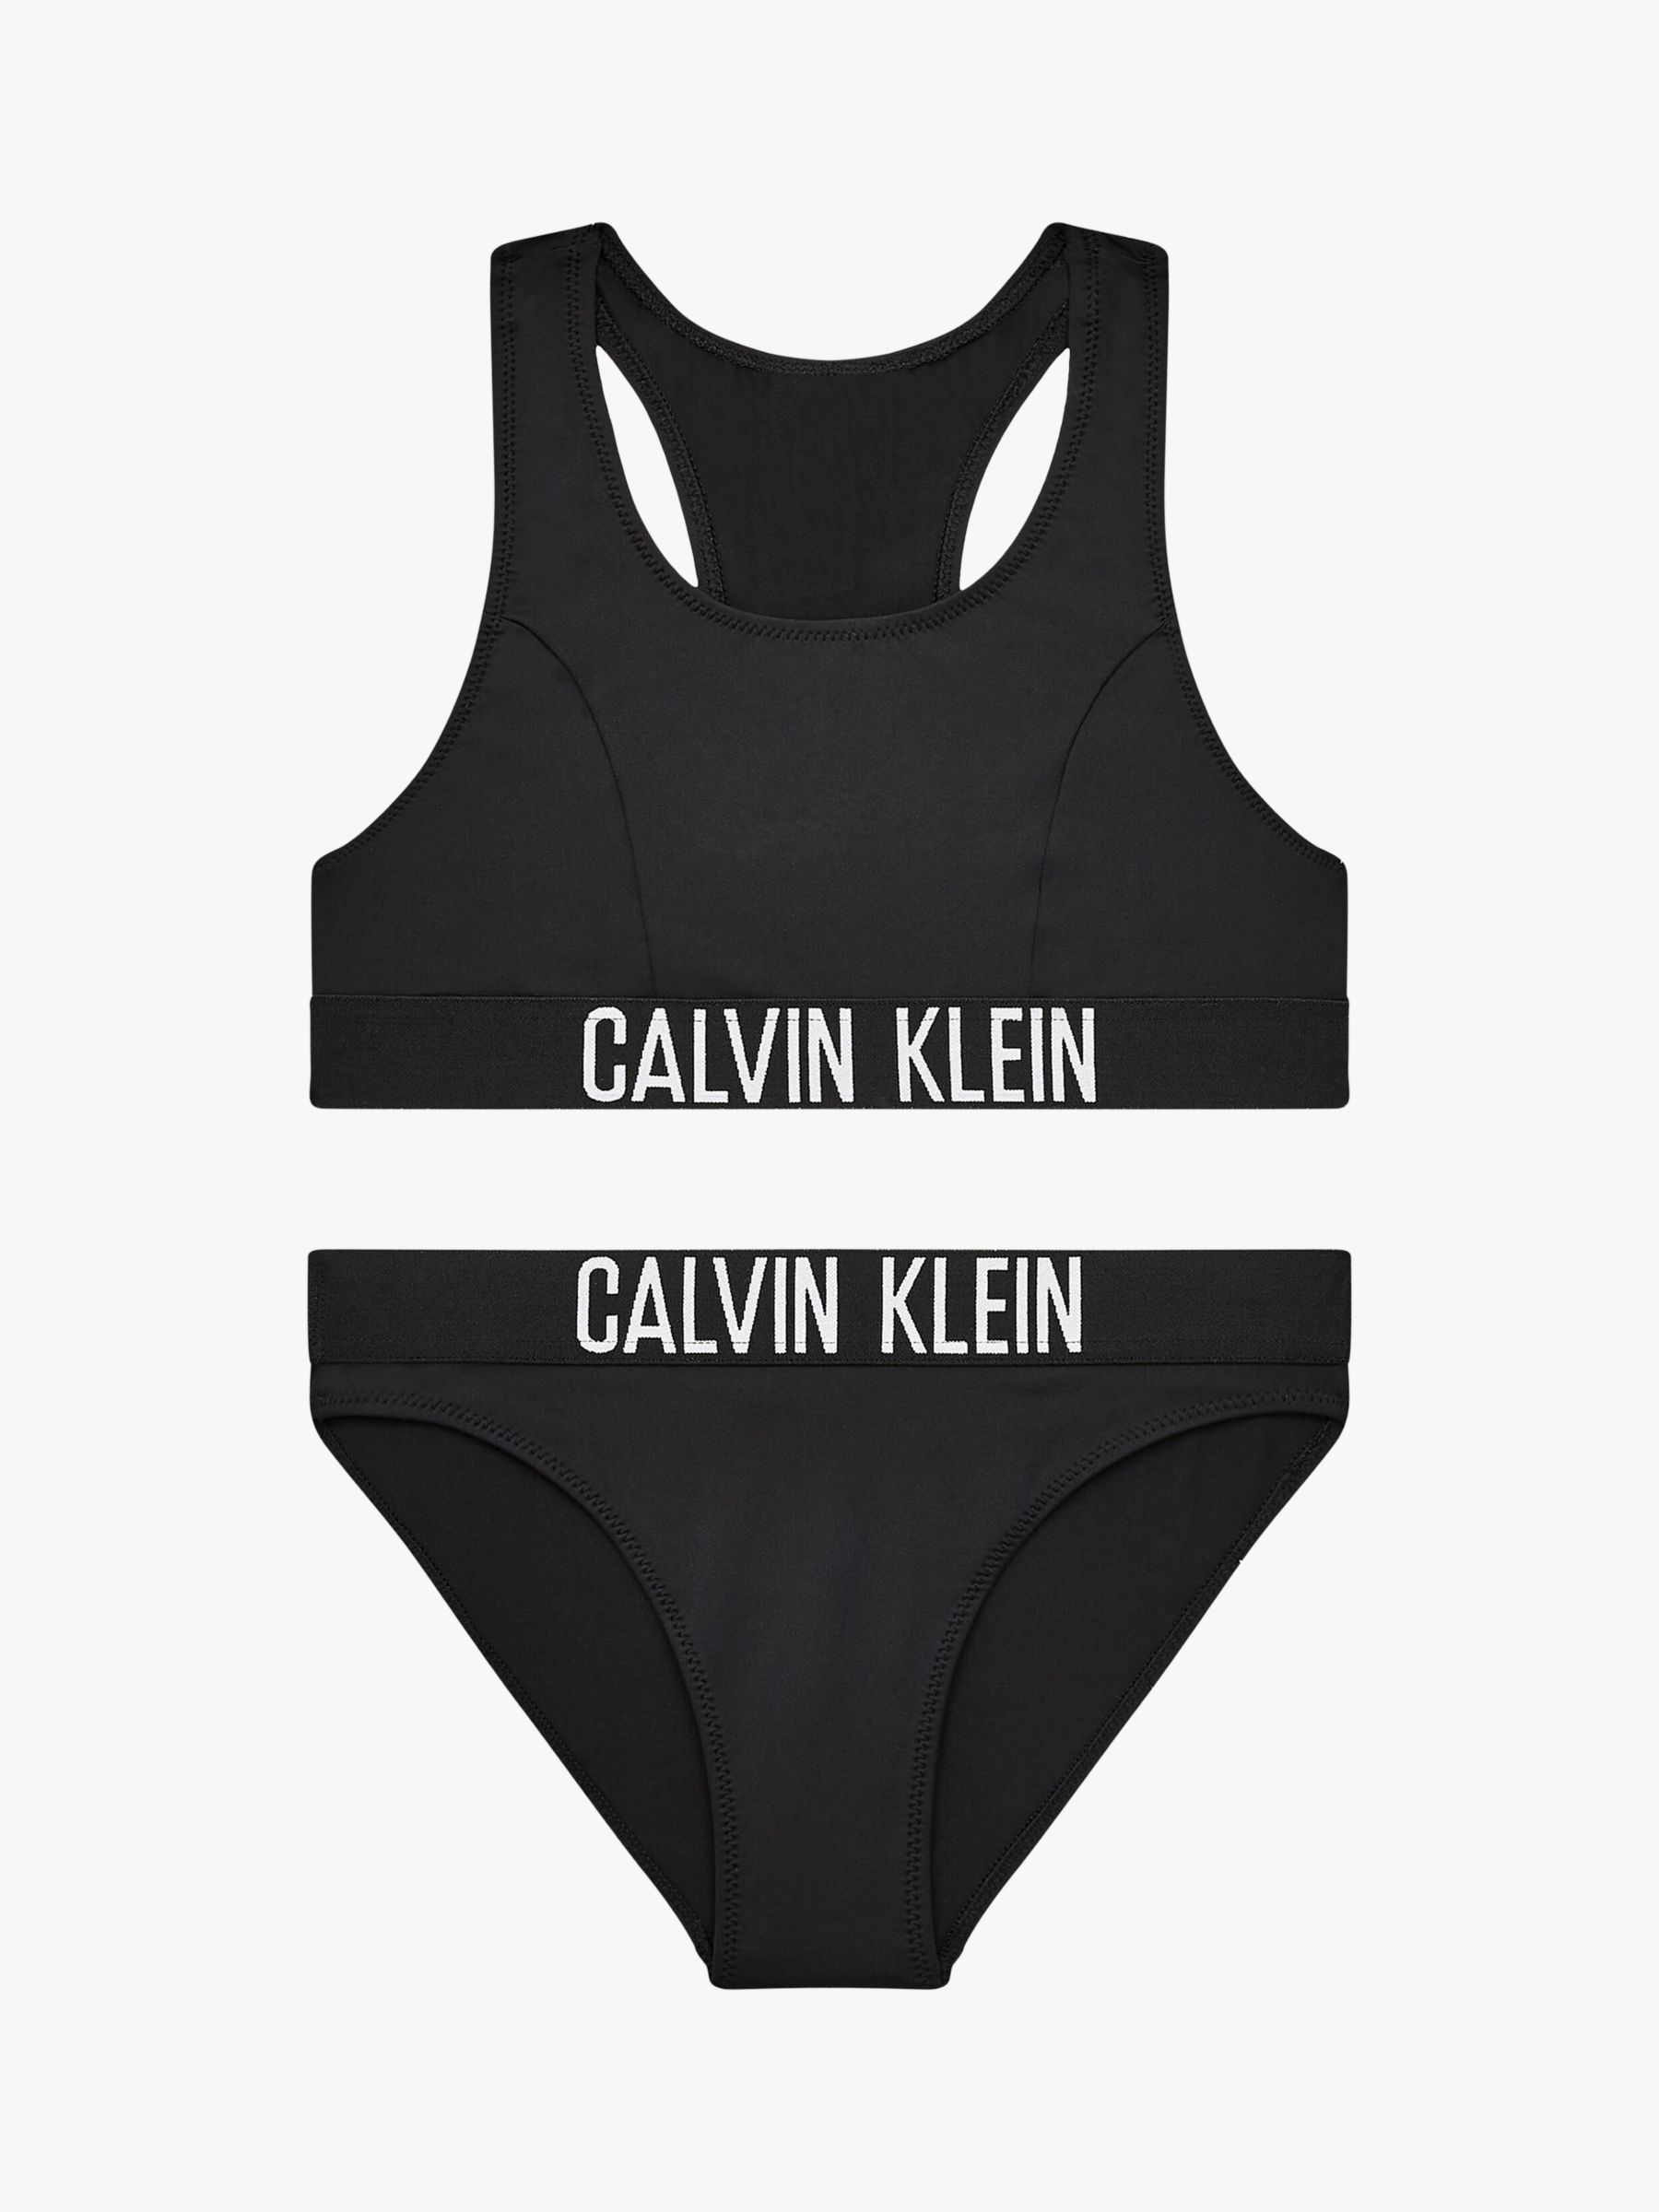 Calvin Klein Kids' Intense Power Bikini Set, Black at John Lewis & Partners